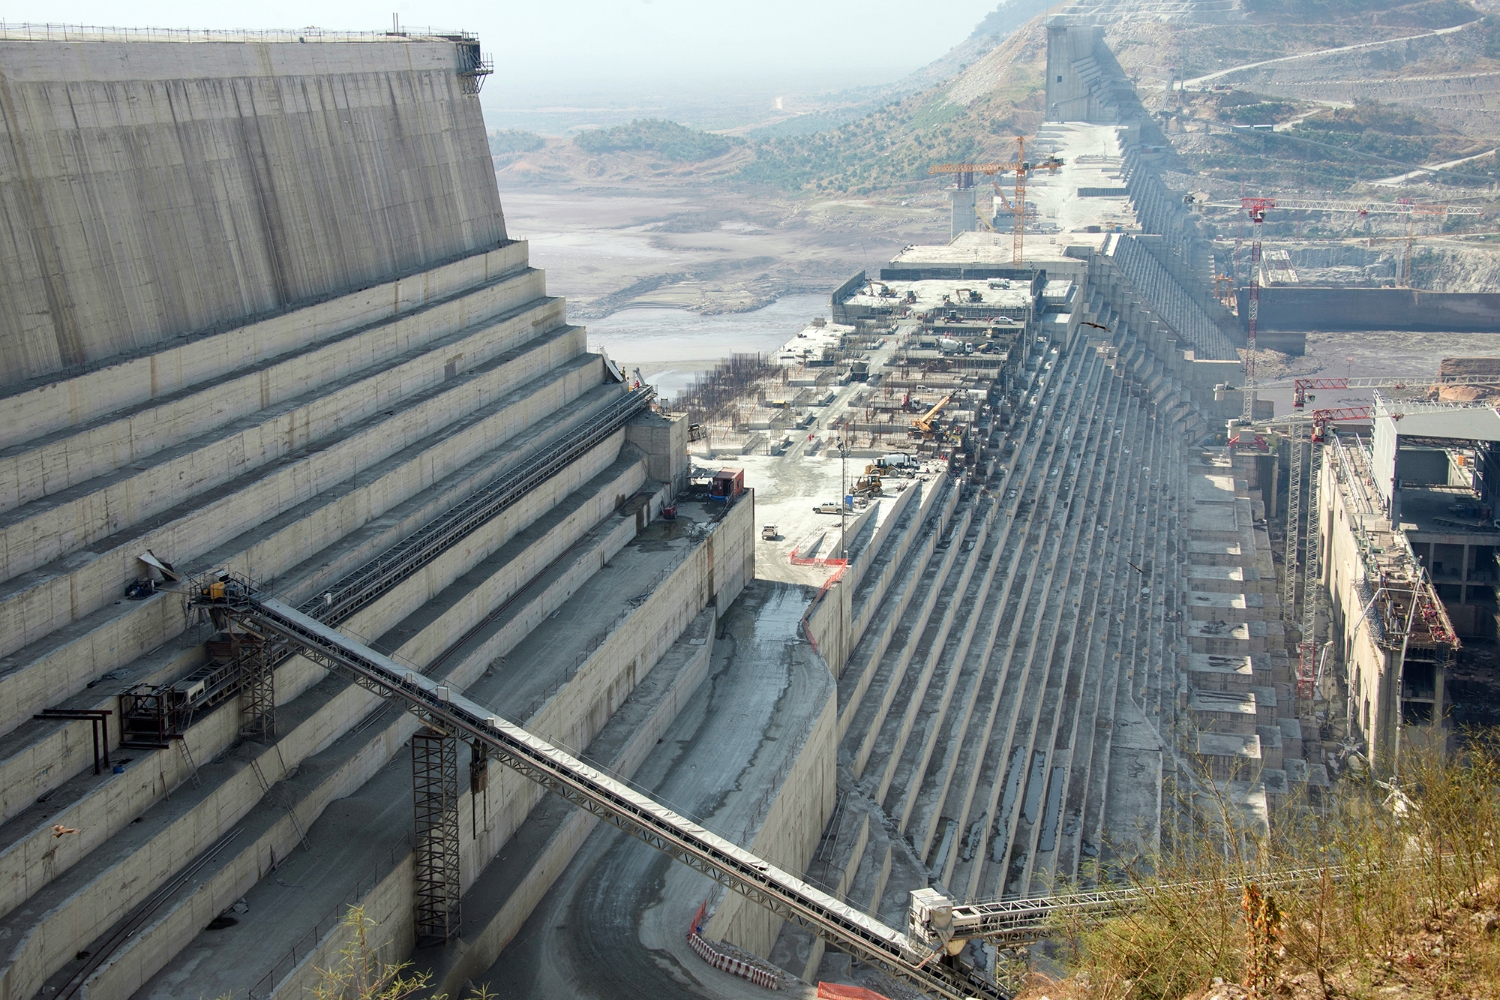 The Renaissance Dam – a national symbol but a regional quandary